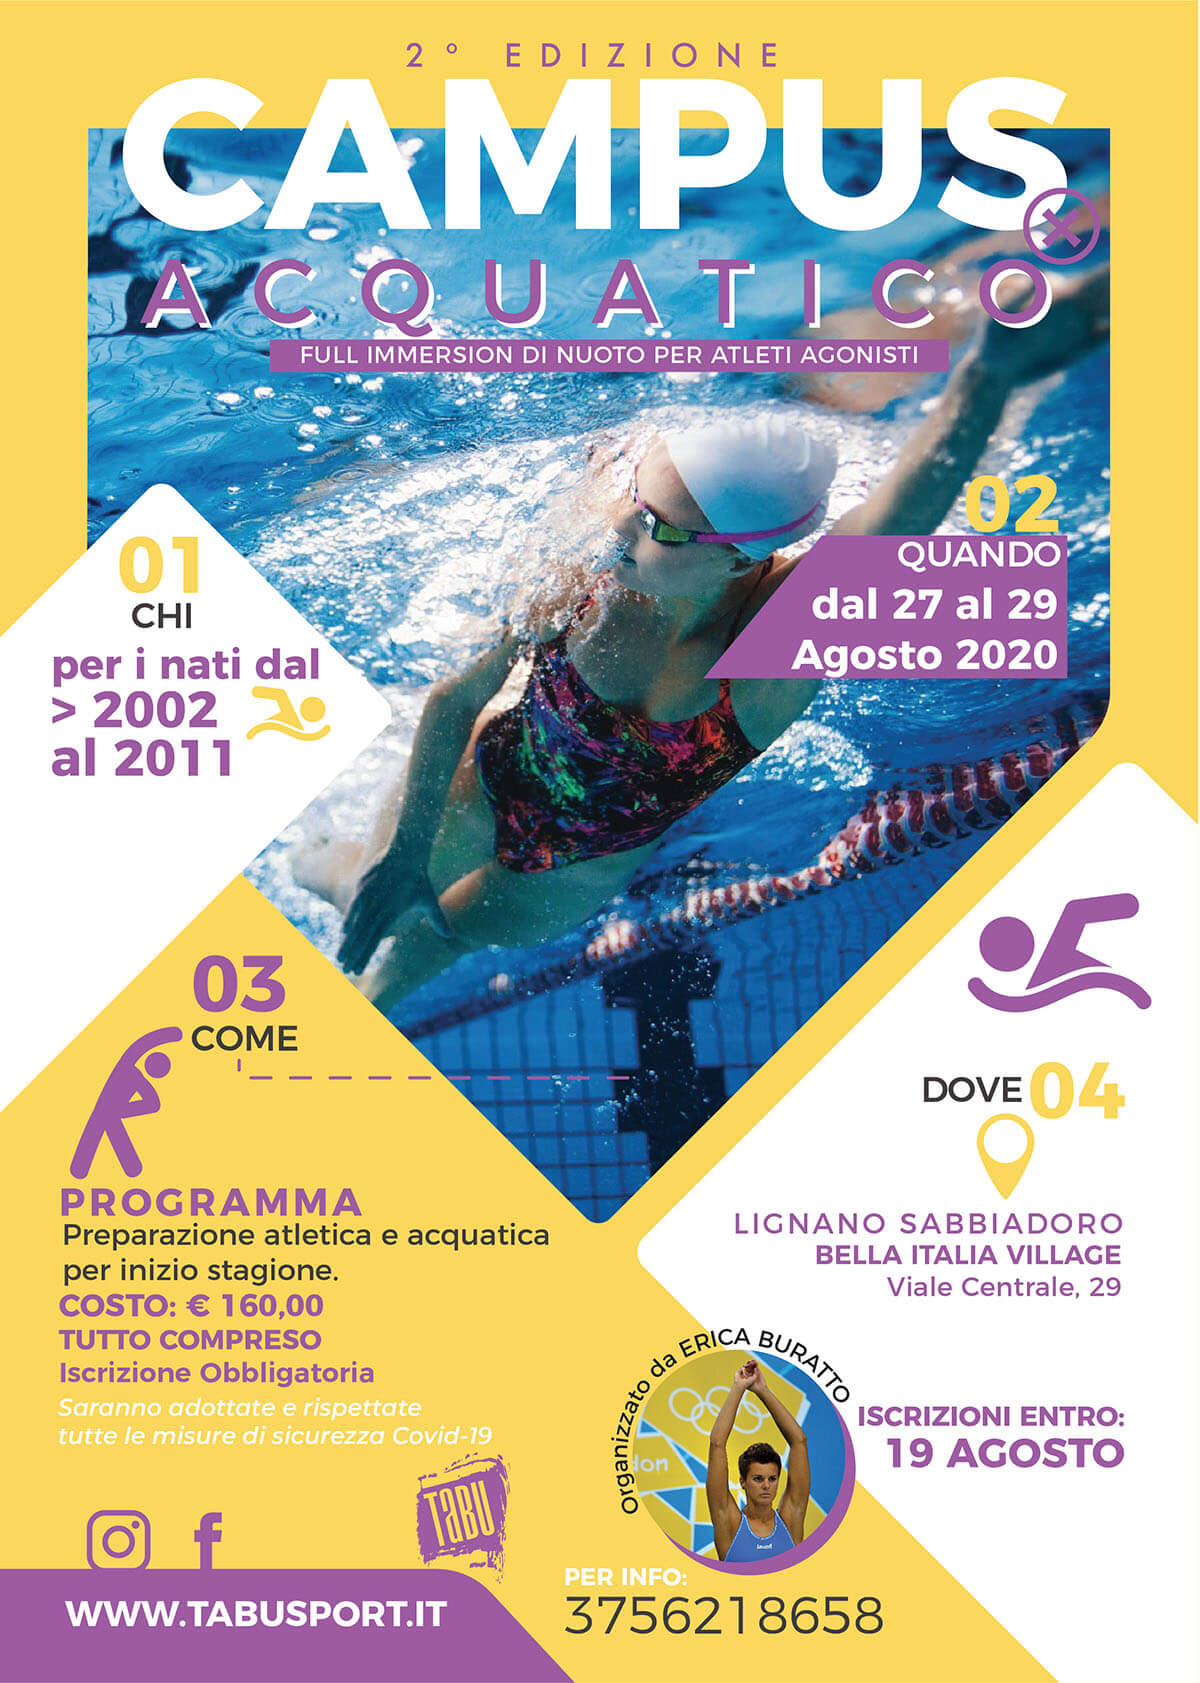 Campus Acquatico full immersion di nuoto per atleti agonisti a Lignano